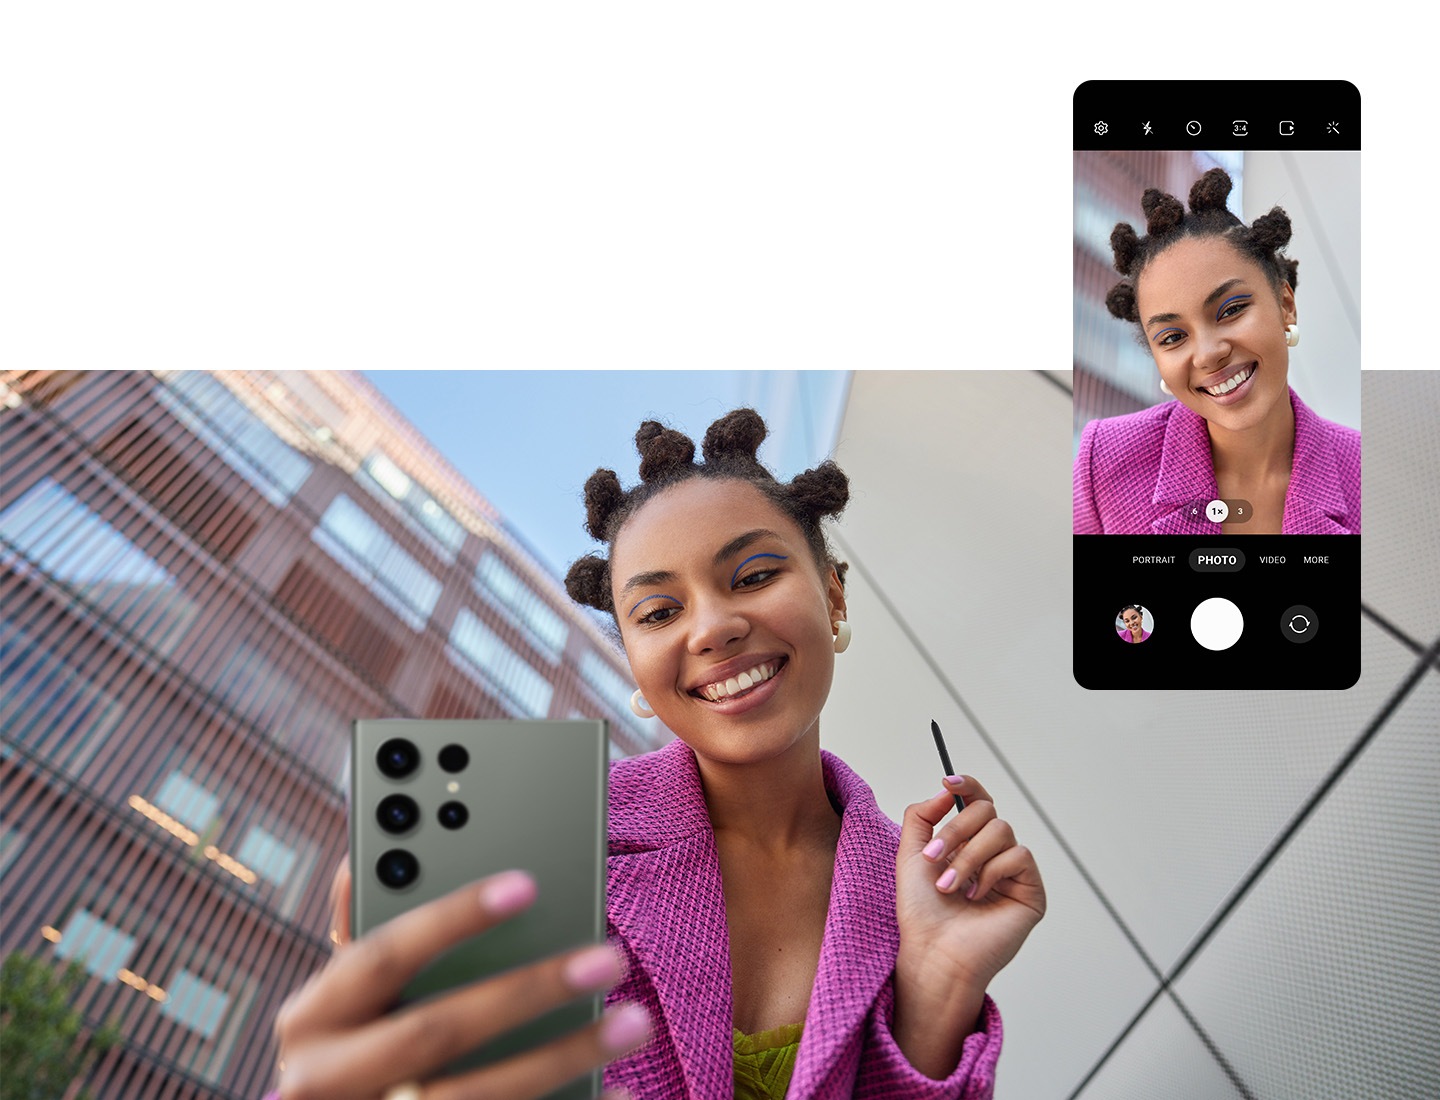 Açık havada iki bina arasında duran bir kadın, S Pen'in Uzaktan Kumanda işlevini kullanarak Galaxy S23 Ultra'nın Ön Kamerasıyla selfie fotoğrafı çekiyor. Üstte, Galaxy S23 Ultra'daki Kamera uygulamasının grafik kullanıcı arayüzü, ortada kadınla birlikte gösteriliyor.